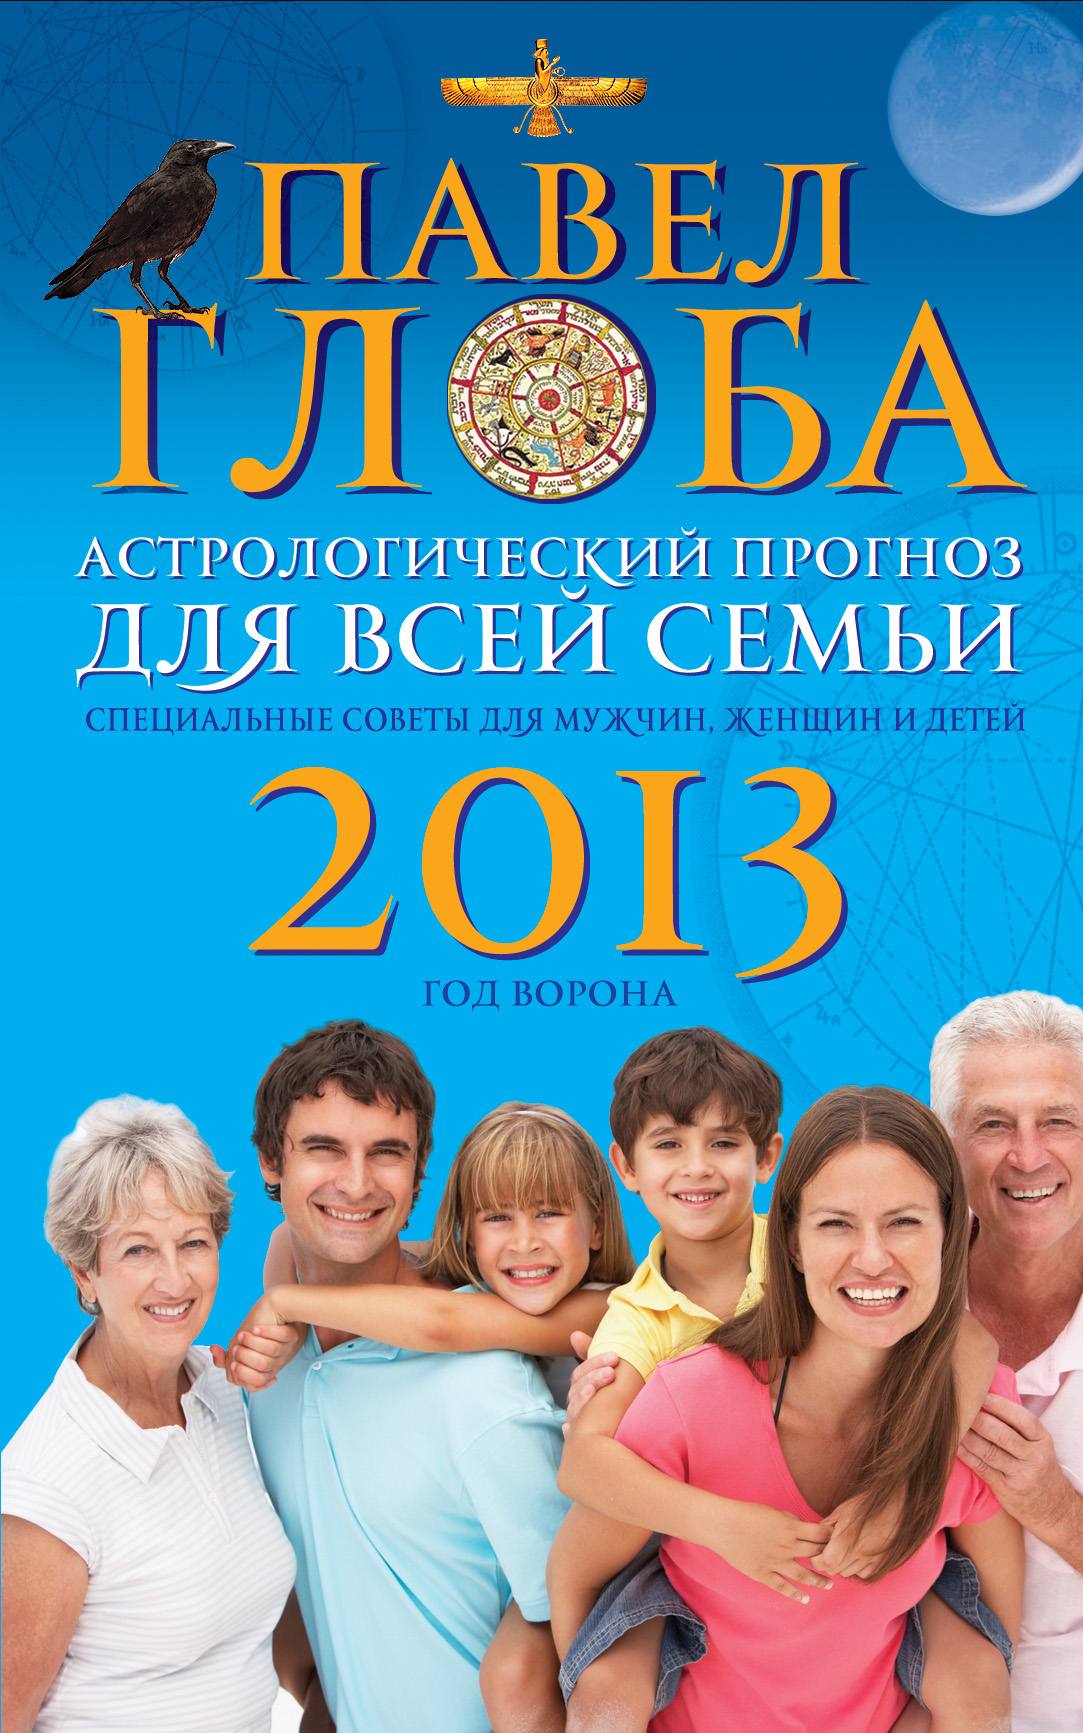 Павел Глоба - «Астрологический прогноз для всей семьи на 2013 год. Специальные советы для мужчин, женщин и детей»